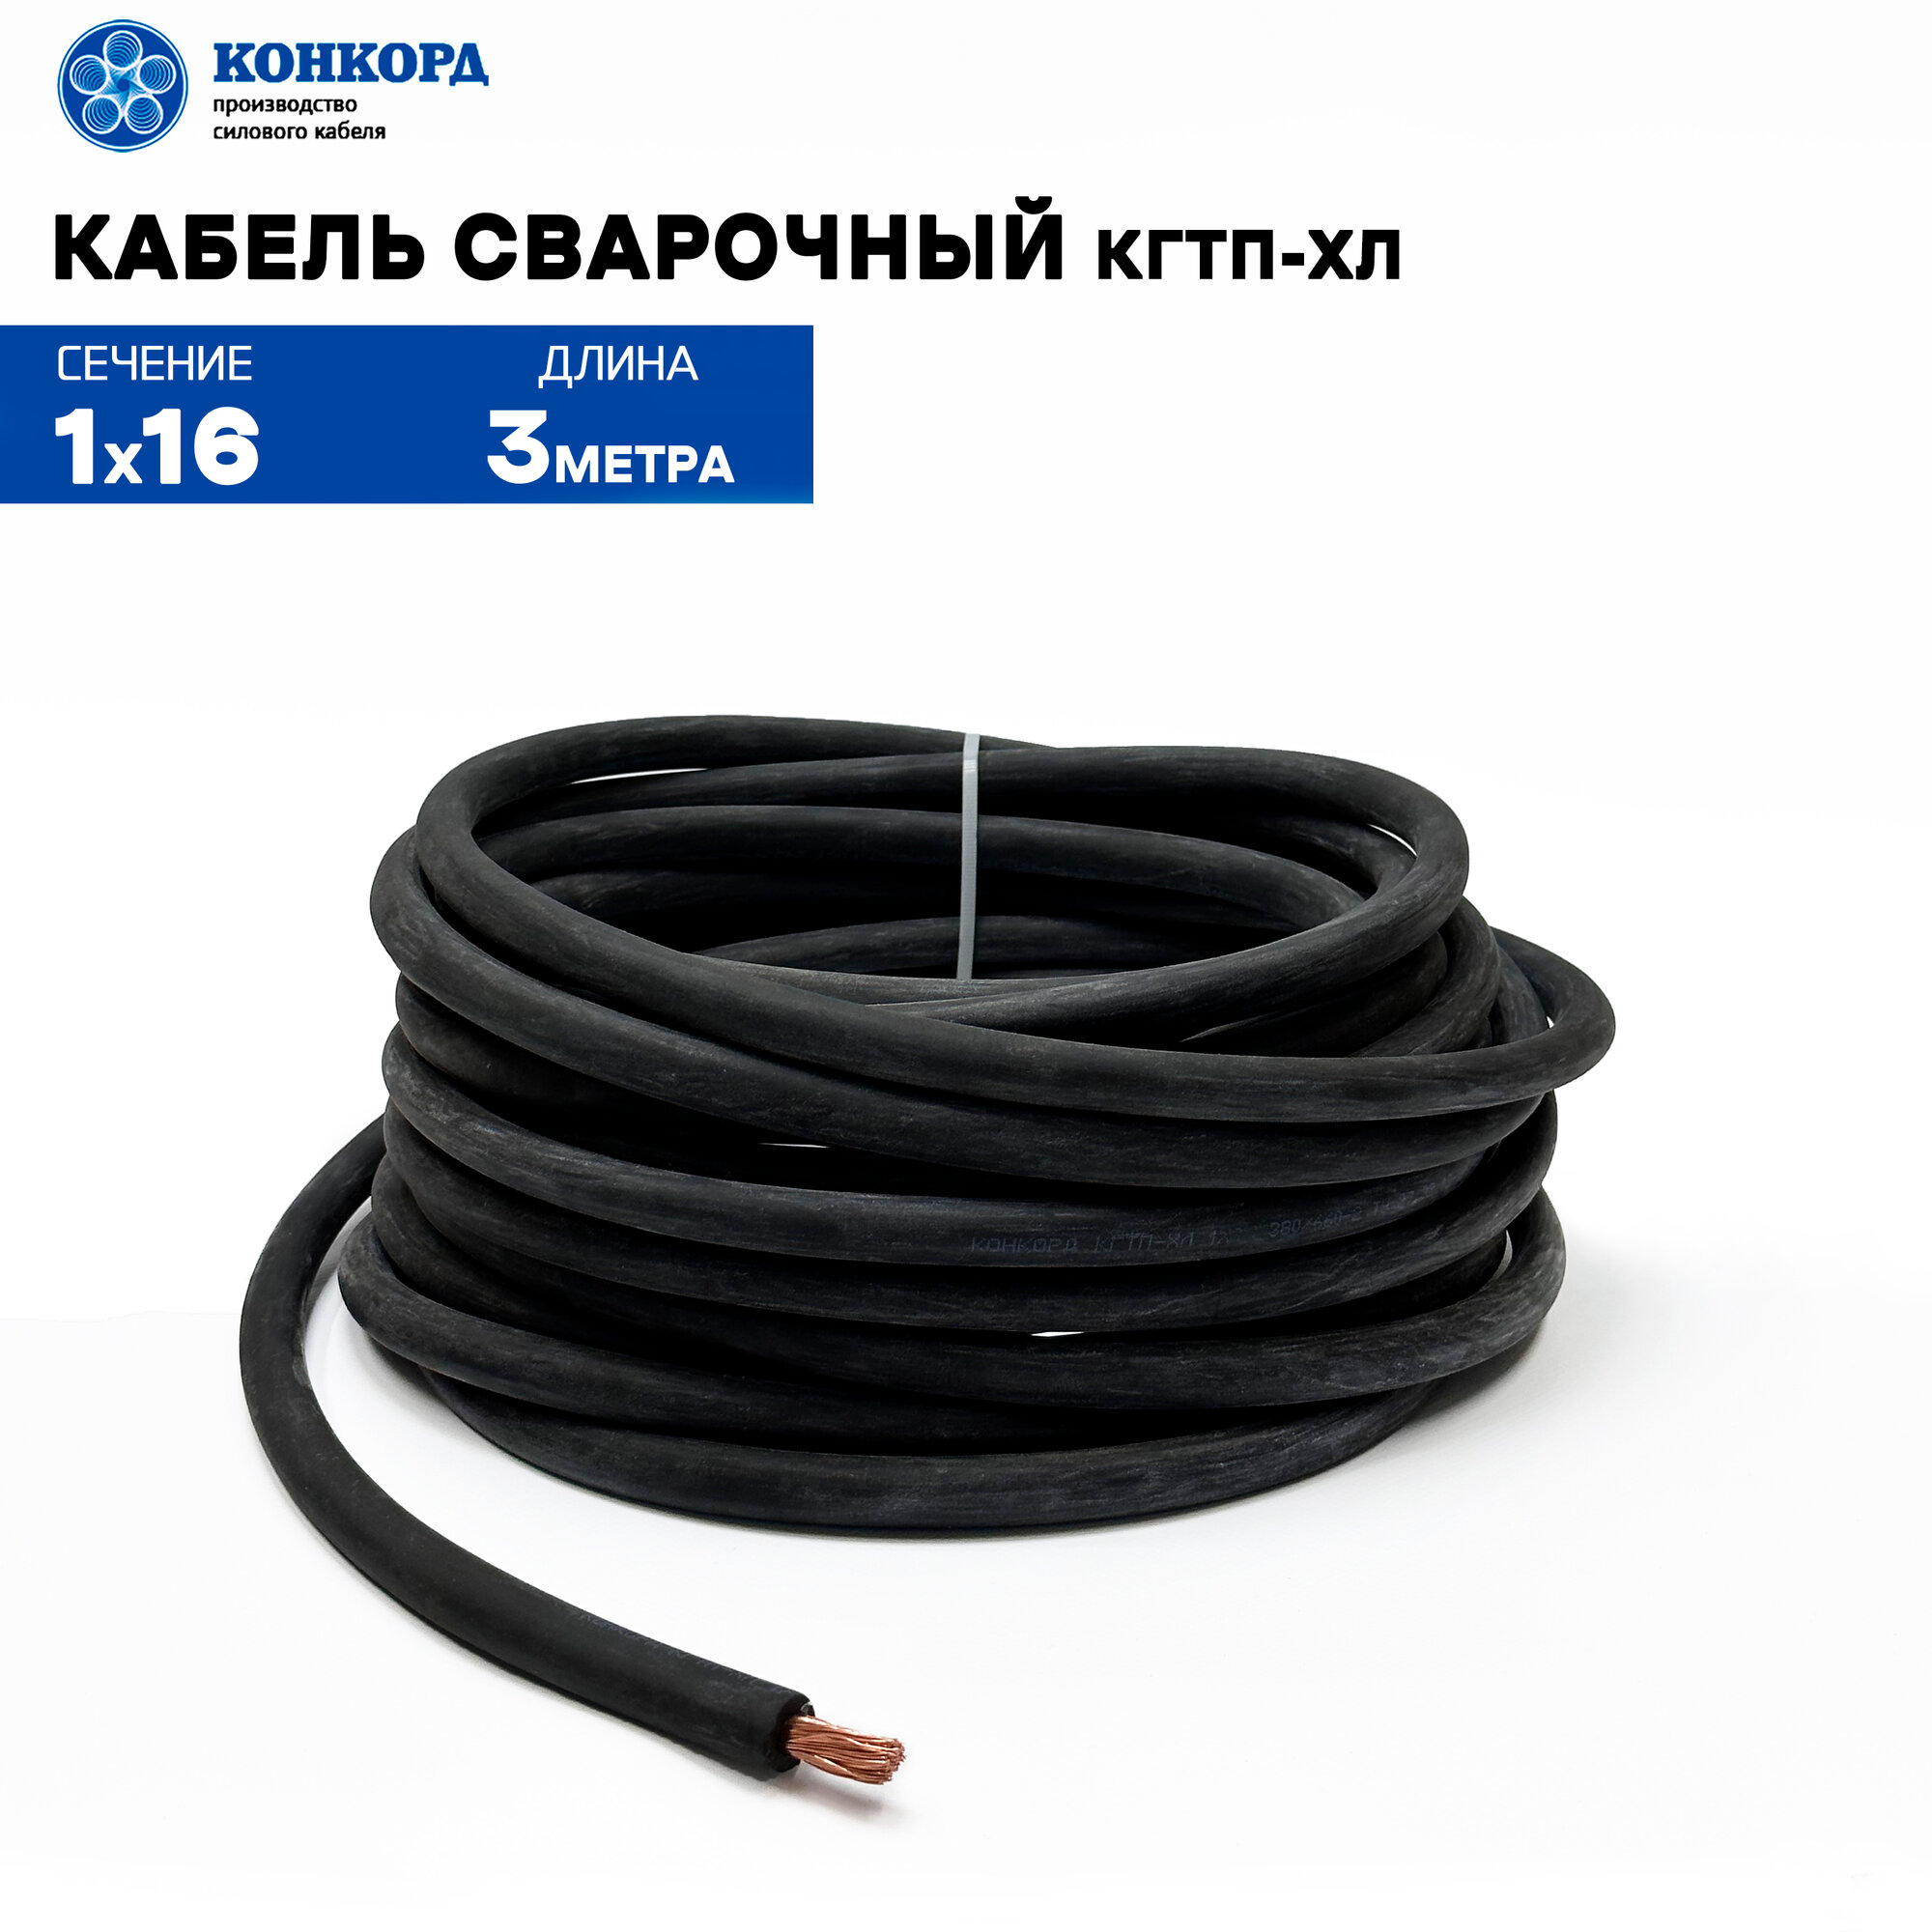 Сварочный кабель КГтп-ХЛ 16кв. мм 3метра.